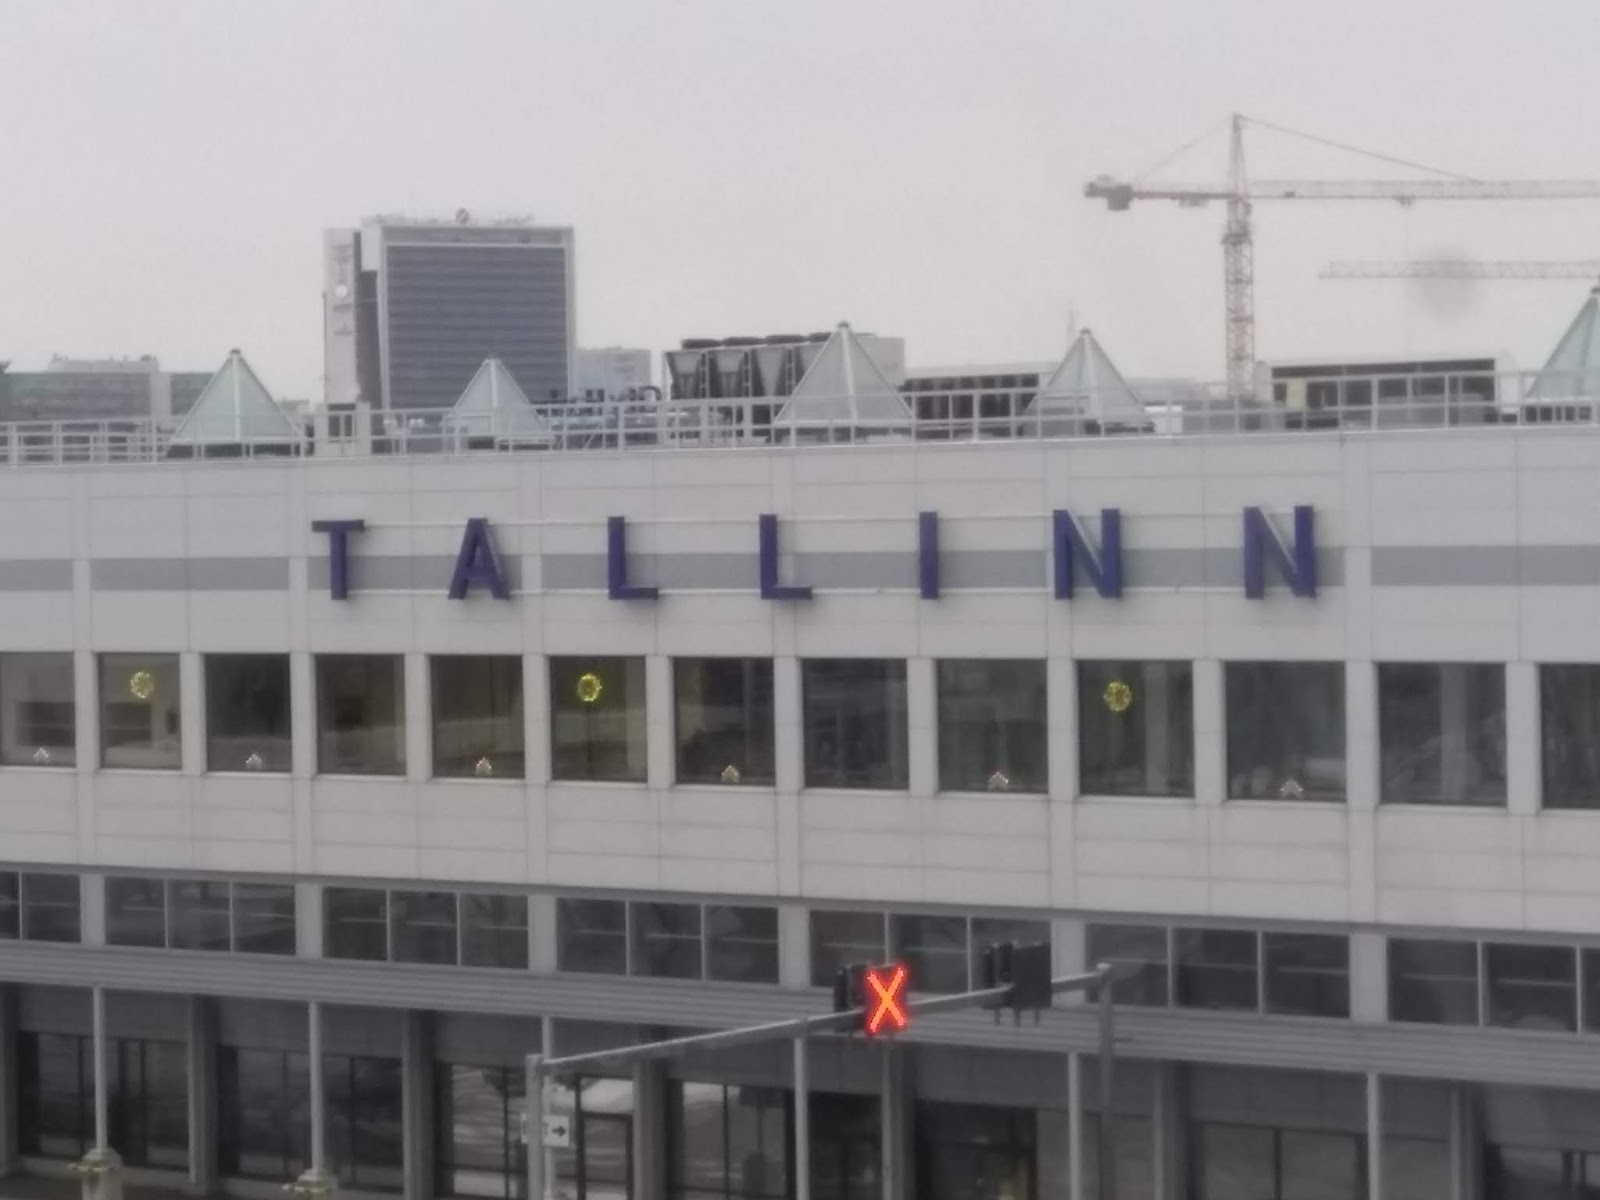 Todellinen Tallinna 2018 kuva